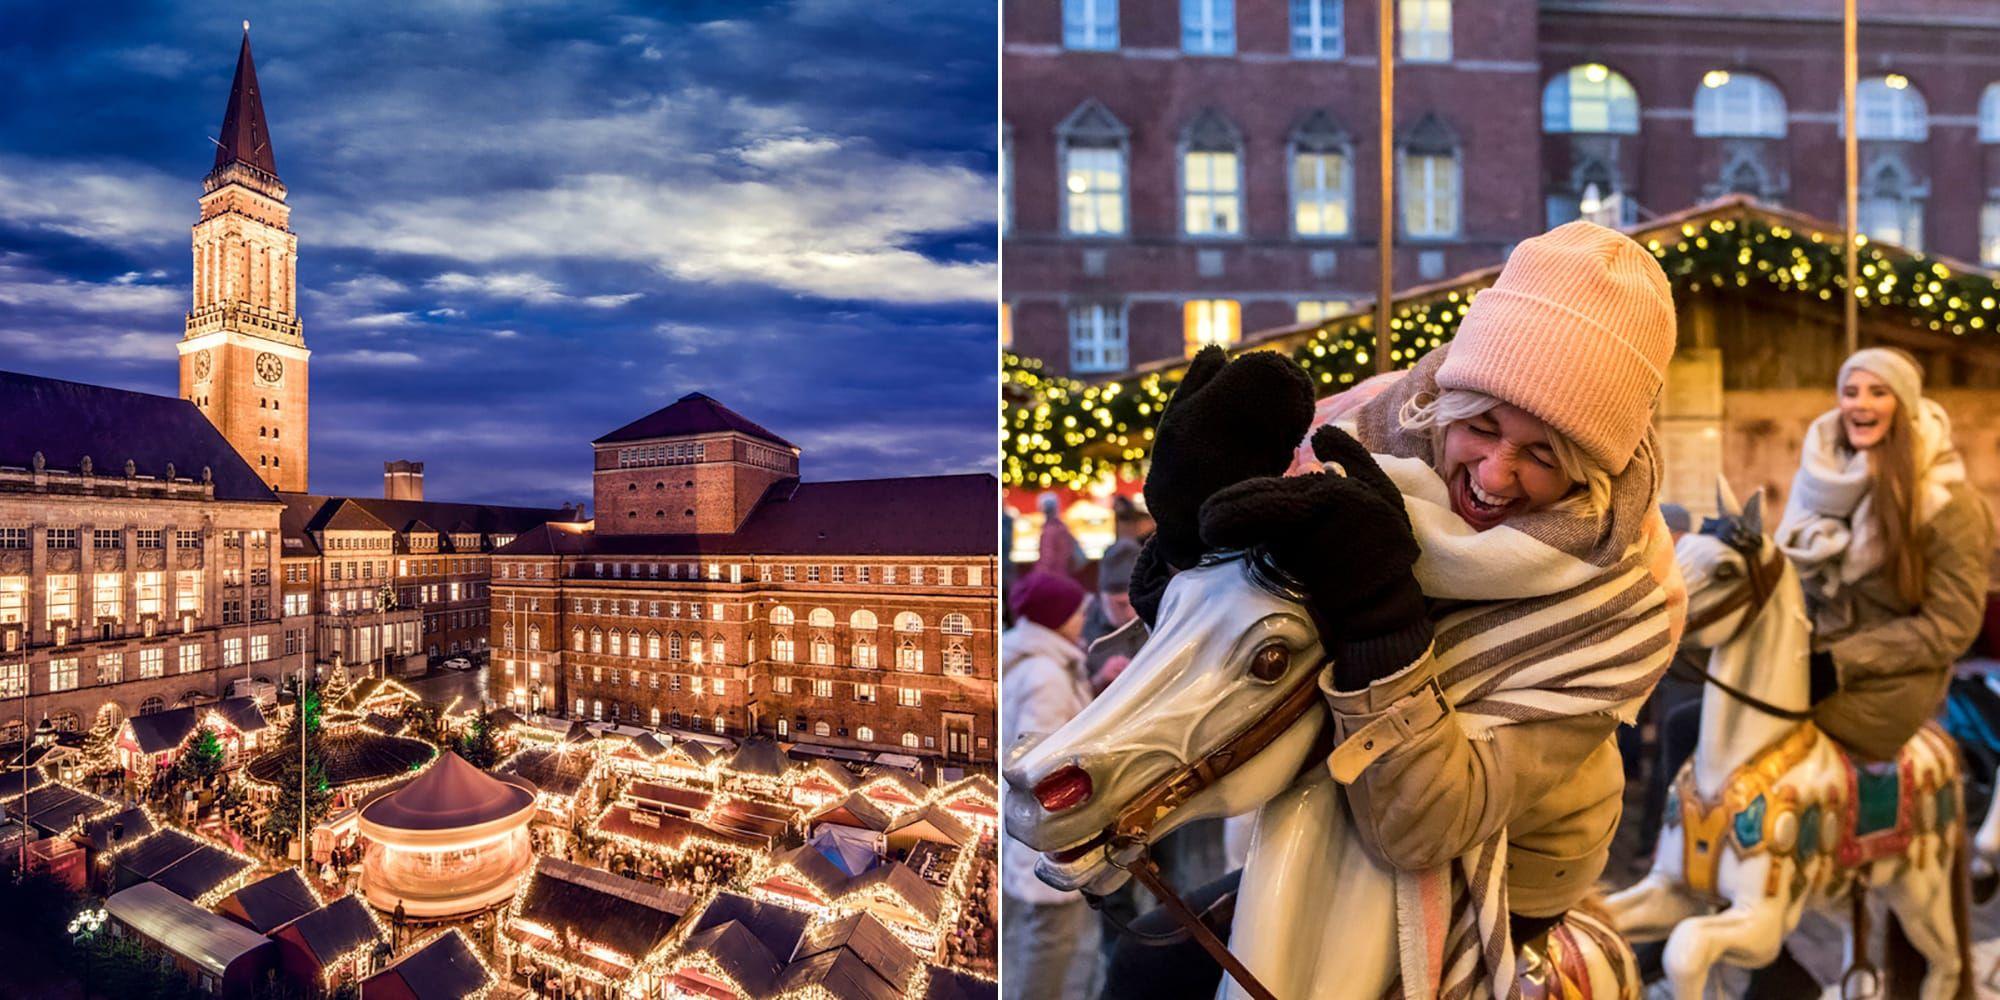 Julmarknaderna i Kiel äger rum varje dag under fyra veckor med start 22 november. Det finns fem olika att besöka, bland annat den vid Rathausplatz (bilden).